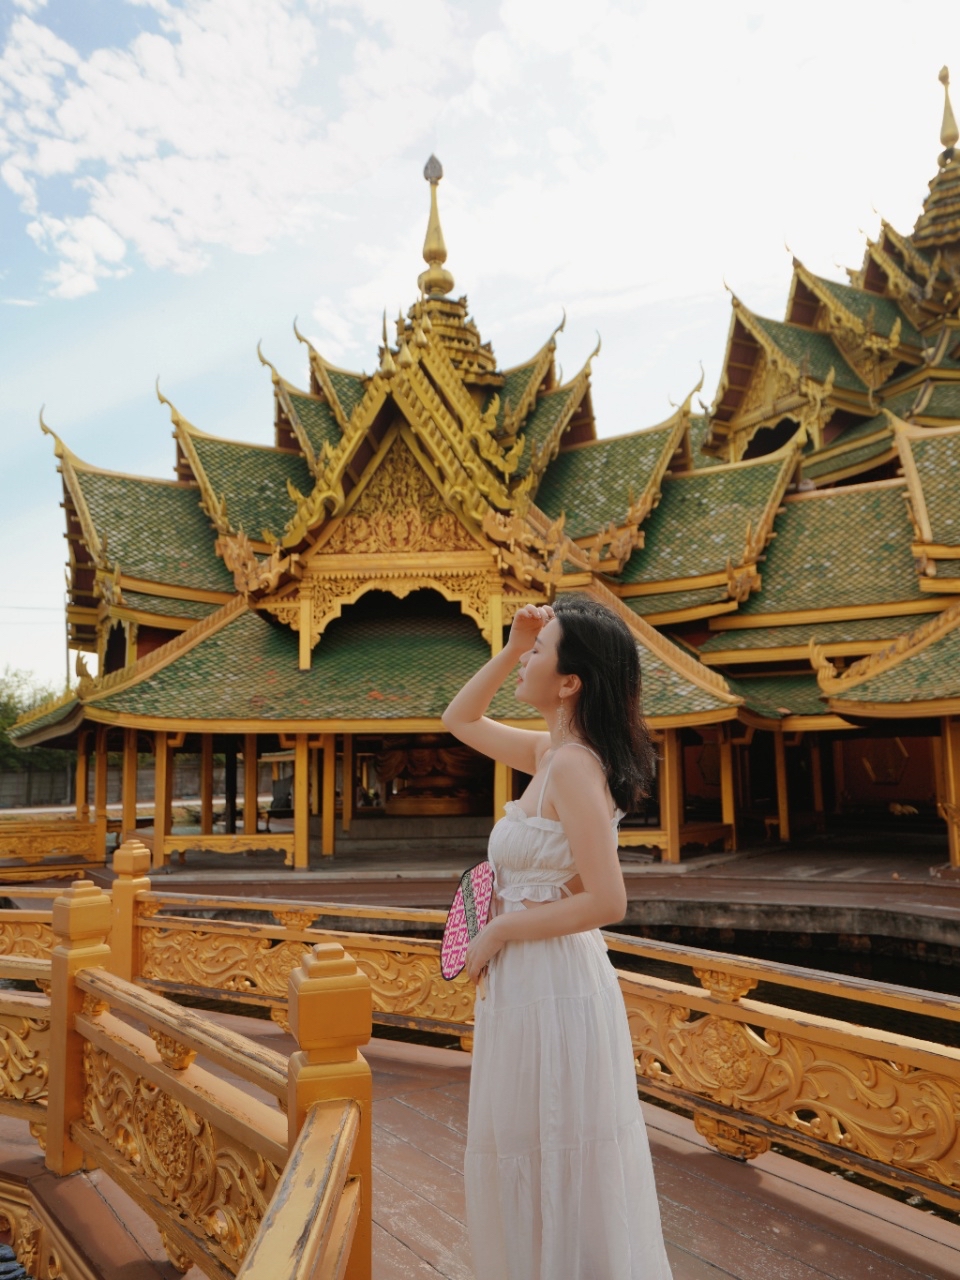 泰国必打卡！来曼谷一定要去一次暹罗古城  以前来泰国旅游只知道去大皇宫、卧佛寺什么的 其实曼谷边上也